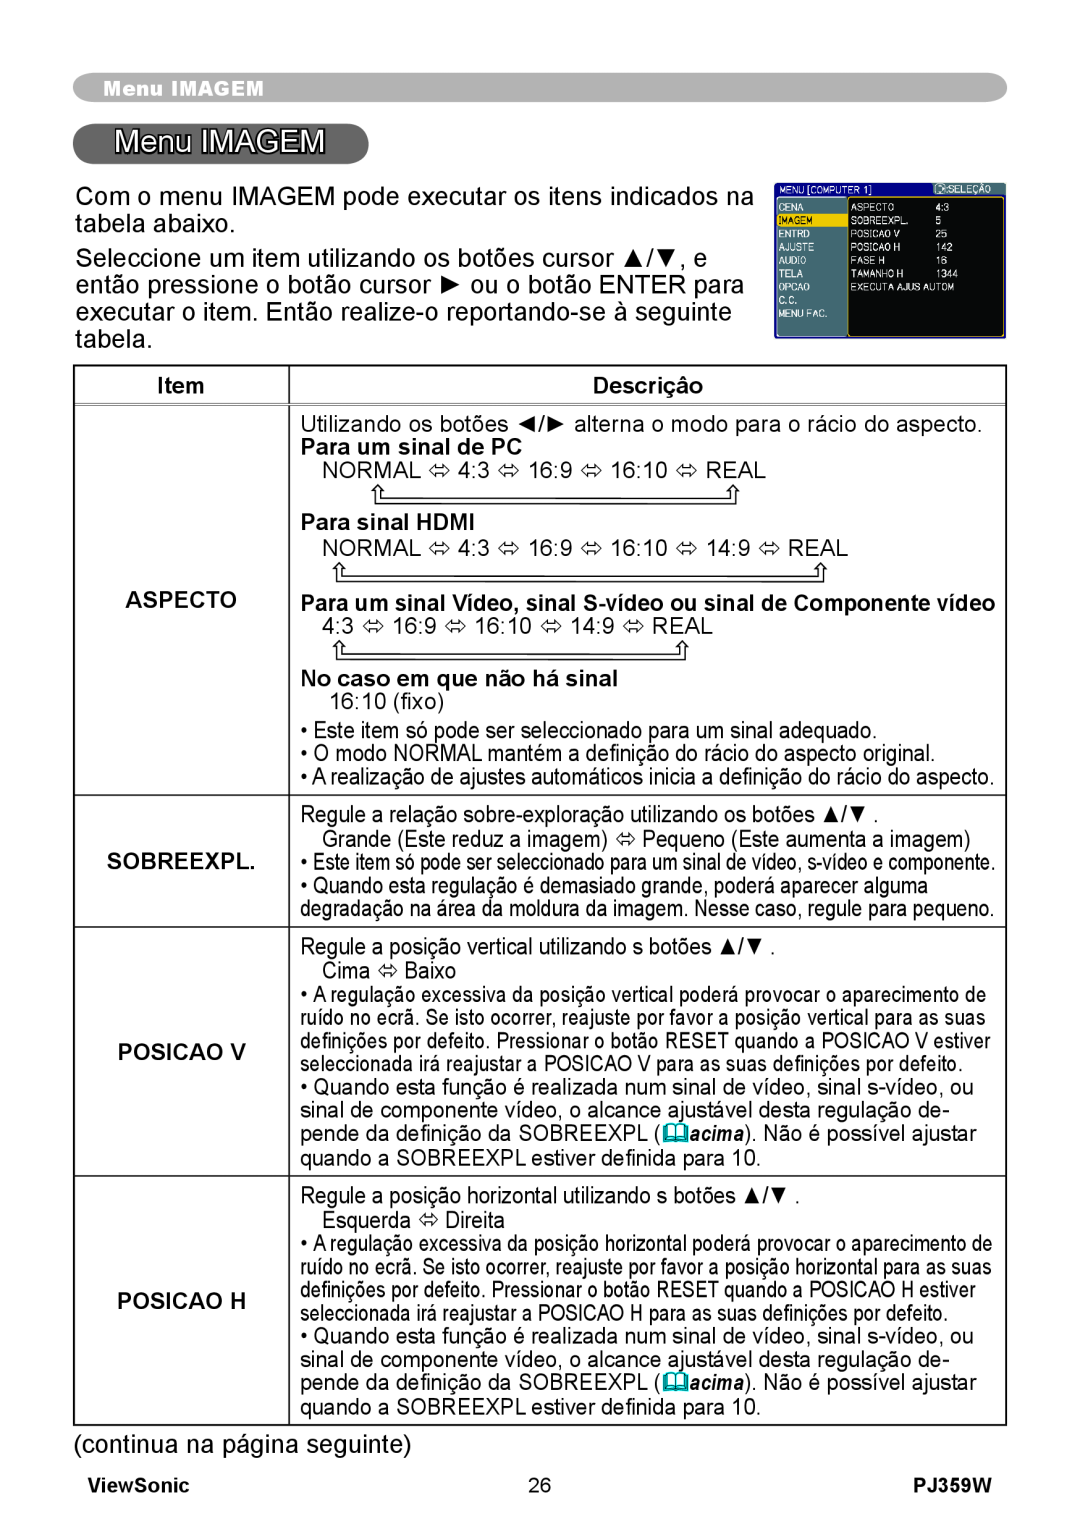 ViewSonic PJ359 manual Menu IMAGEM, Descriçâo, Para um sinal de PC, Para sinal HDMI, Aspecto, Sobreexpl, Posicao H 